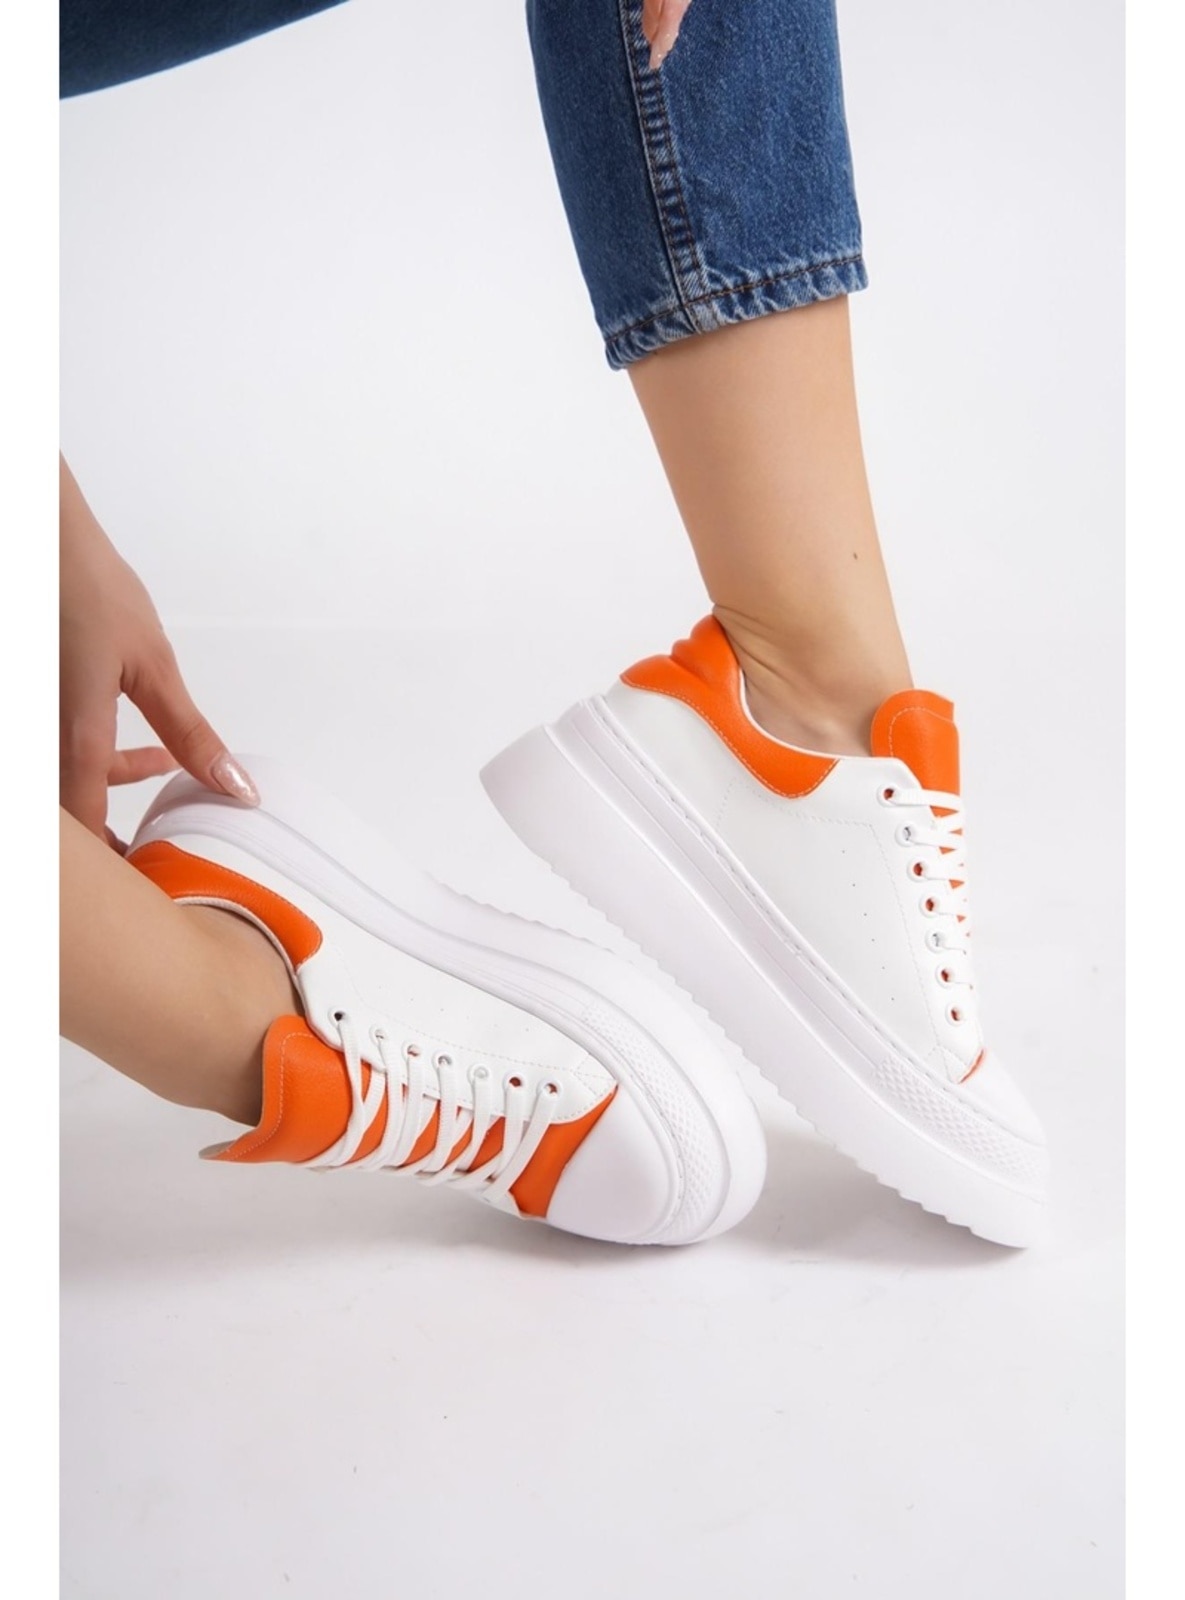 Rekvisitter sokker avis Orange - Sport - 1000gr - Sports Shoes